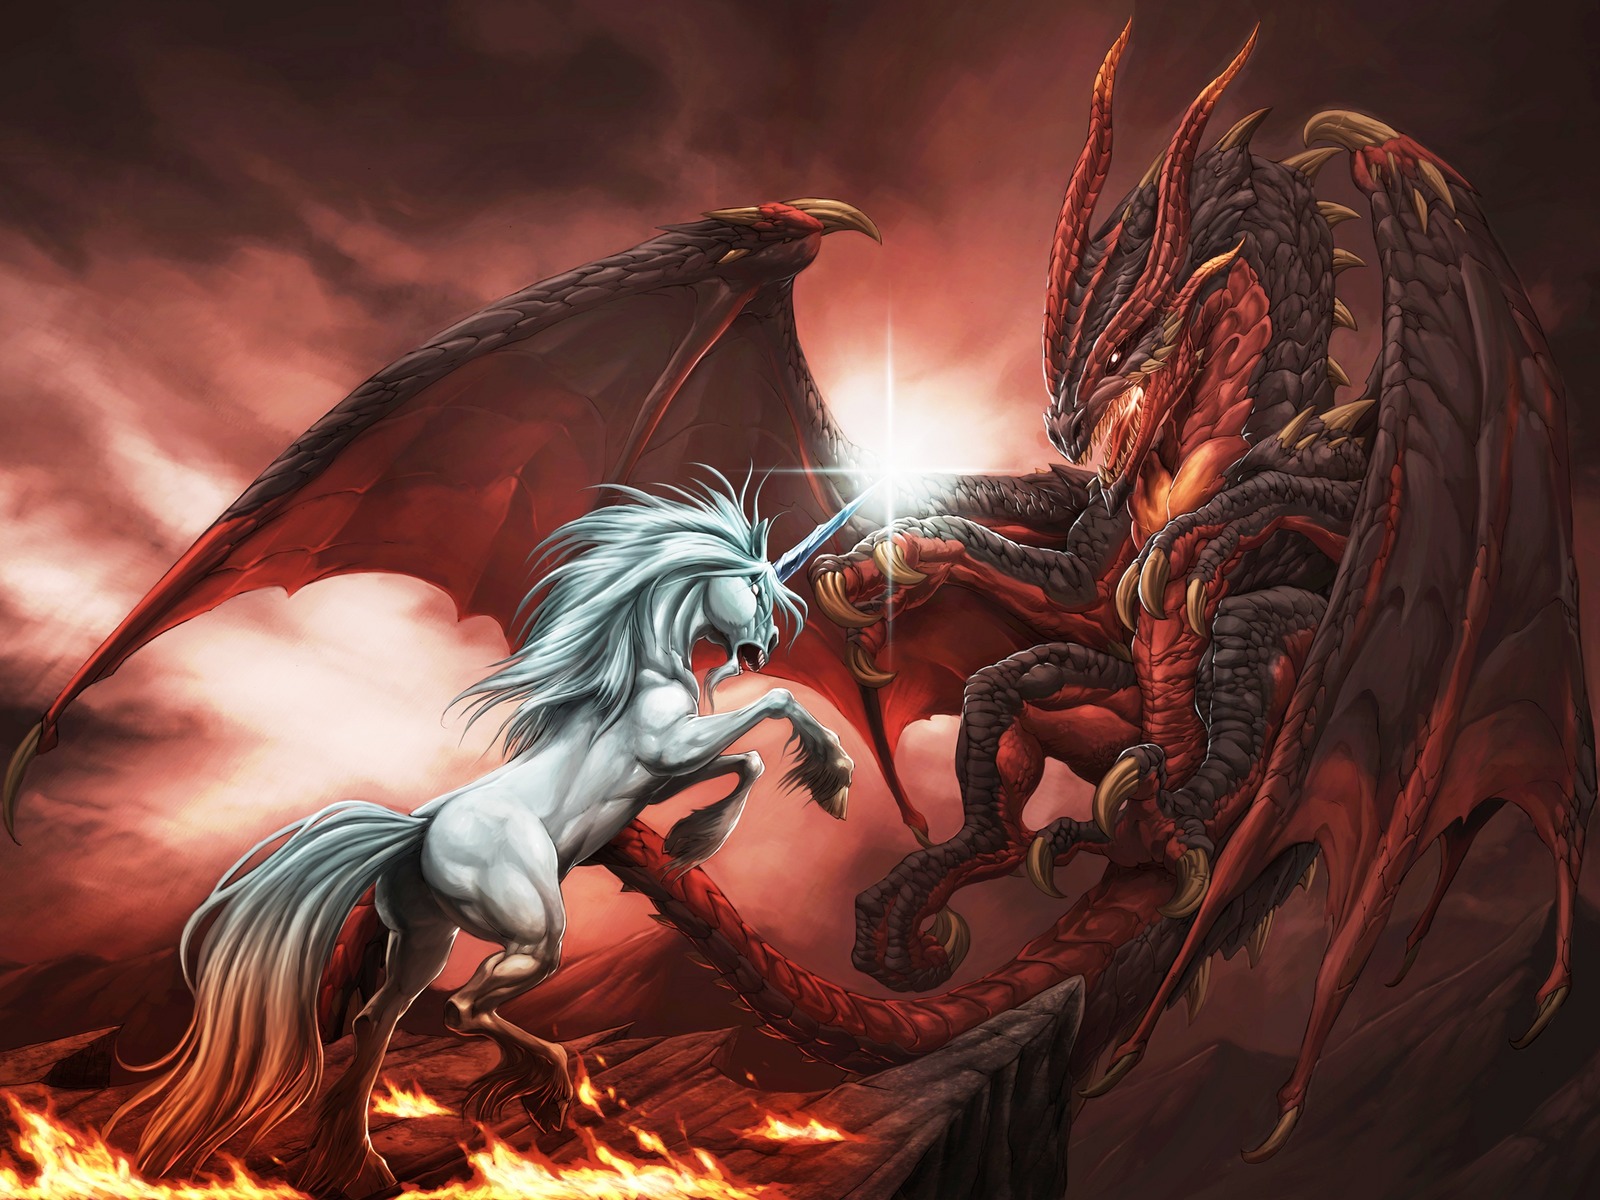 3d обои Война единорога с драконом, свирепая схватка на горящей скале  эмо # 89718